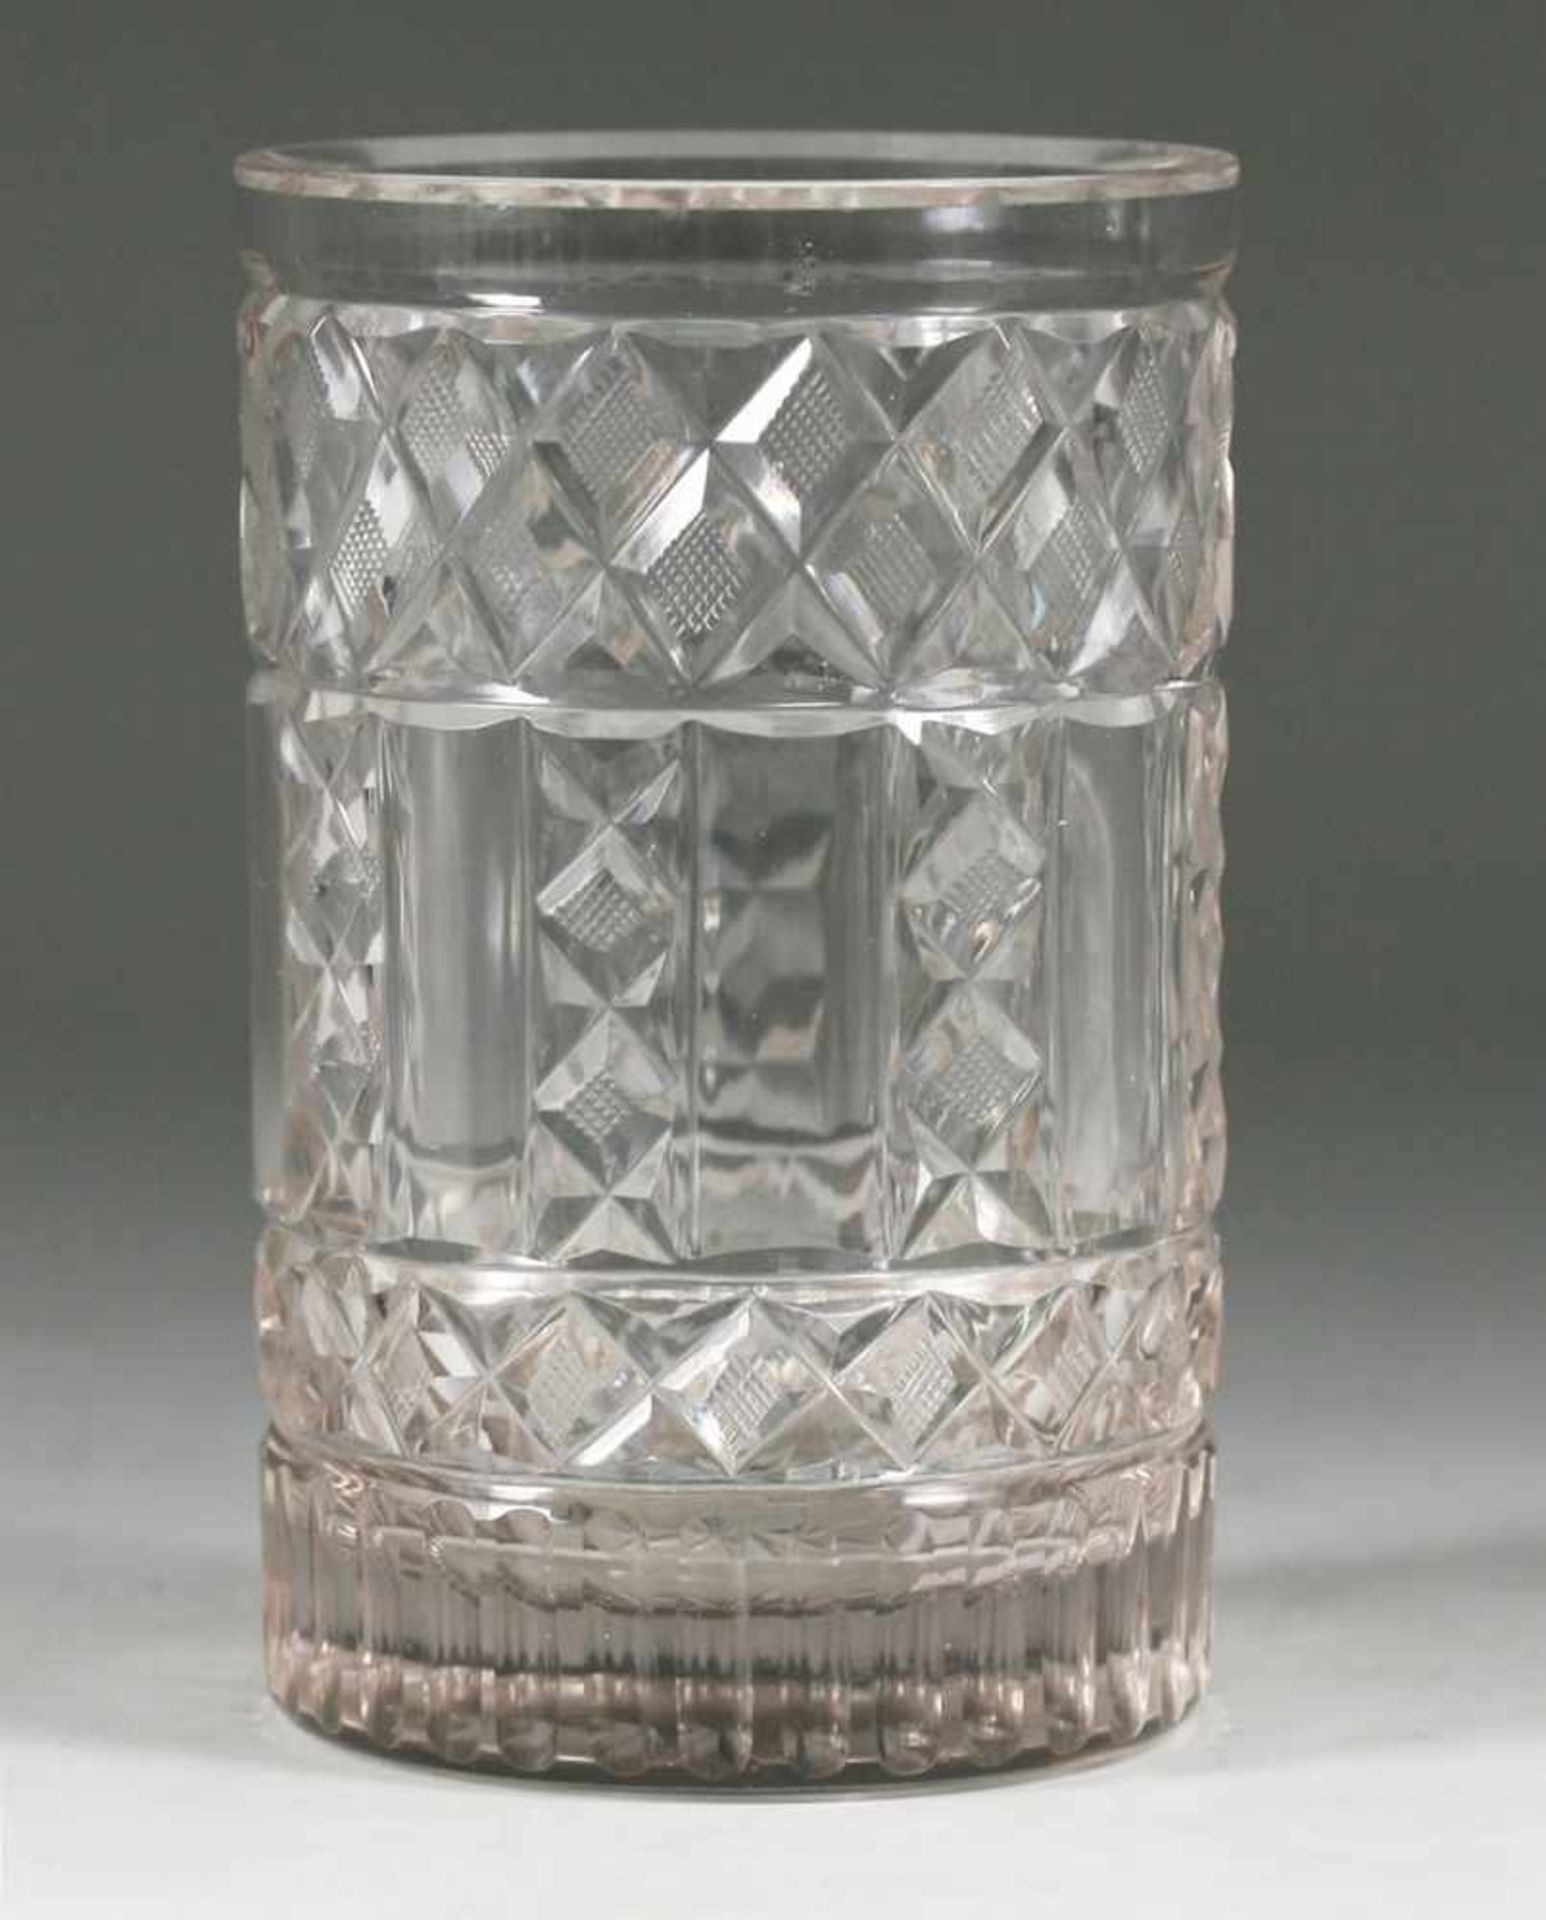 Biedermeier-BecherFarbloses Glas. Formgeblasen. Umlaufender Steinel-, Kerb- u. Walzenschliff,